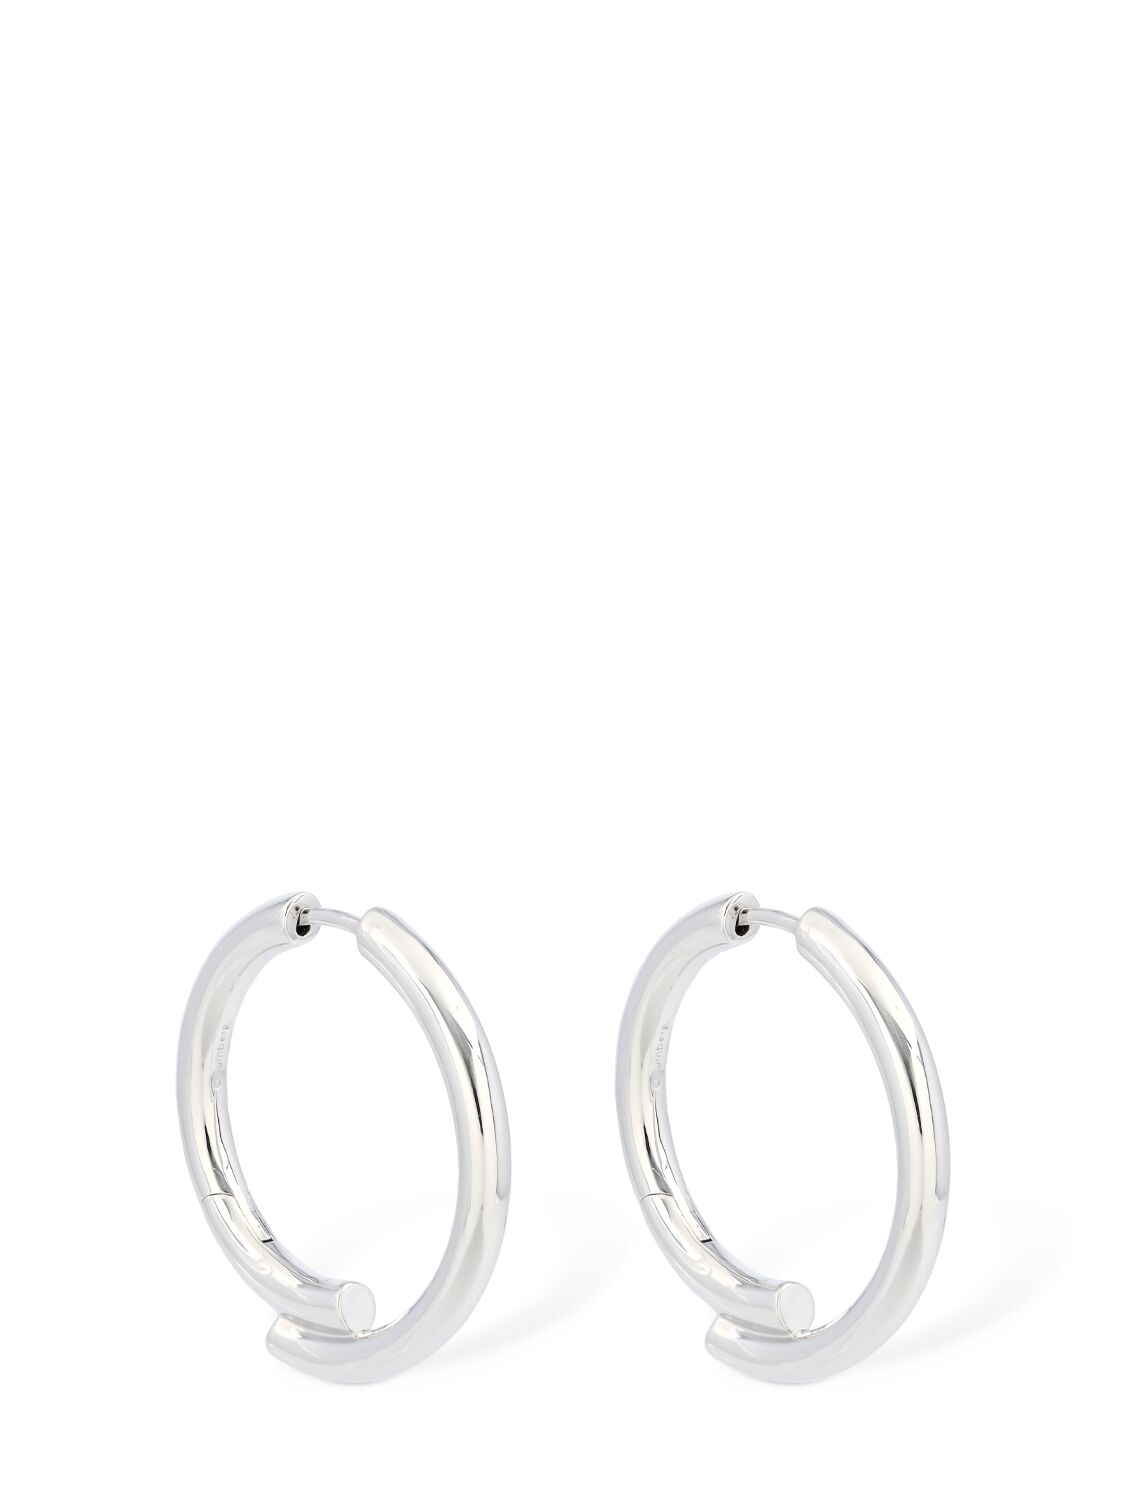 Image of Silver Chaos Hoop Earrings